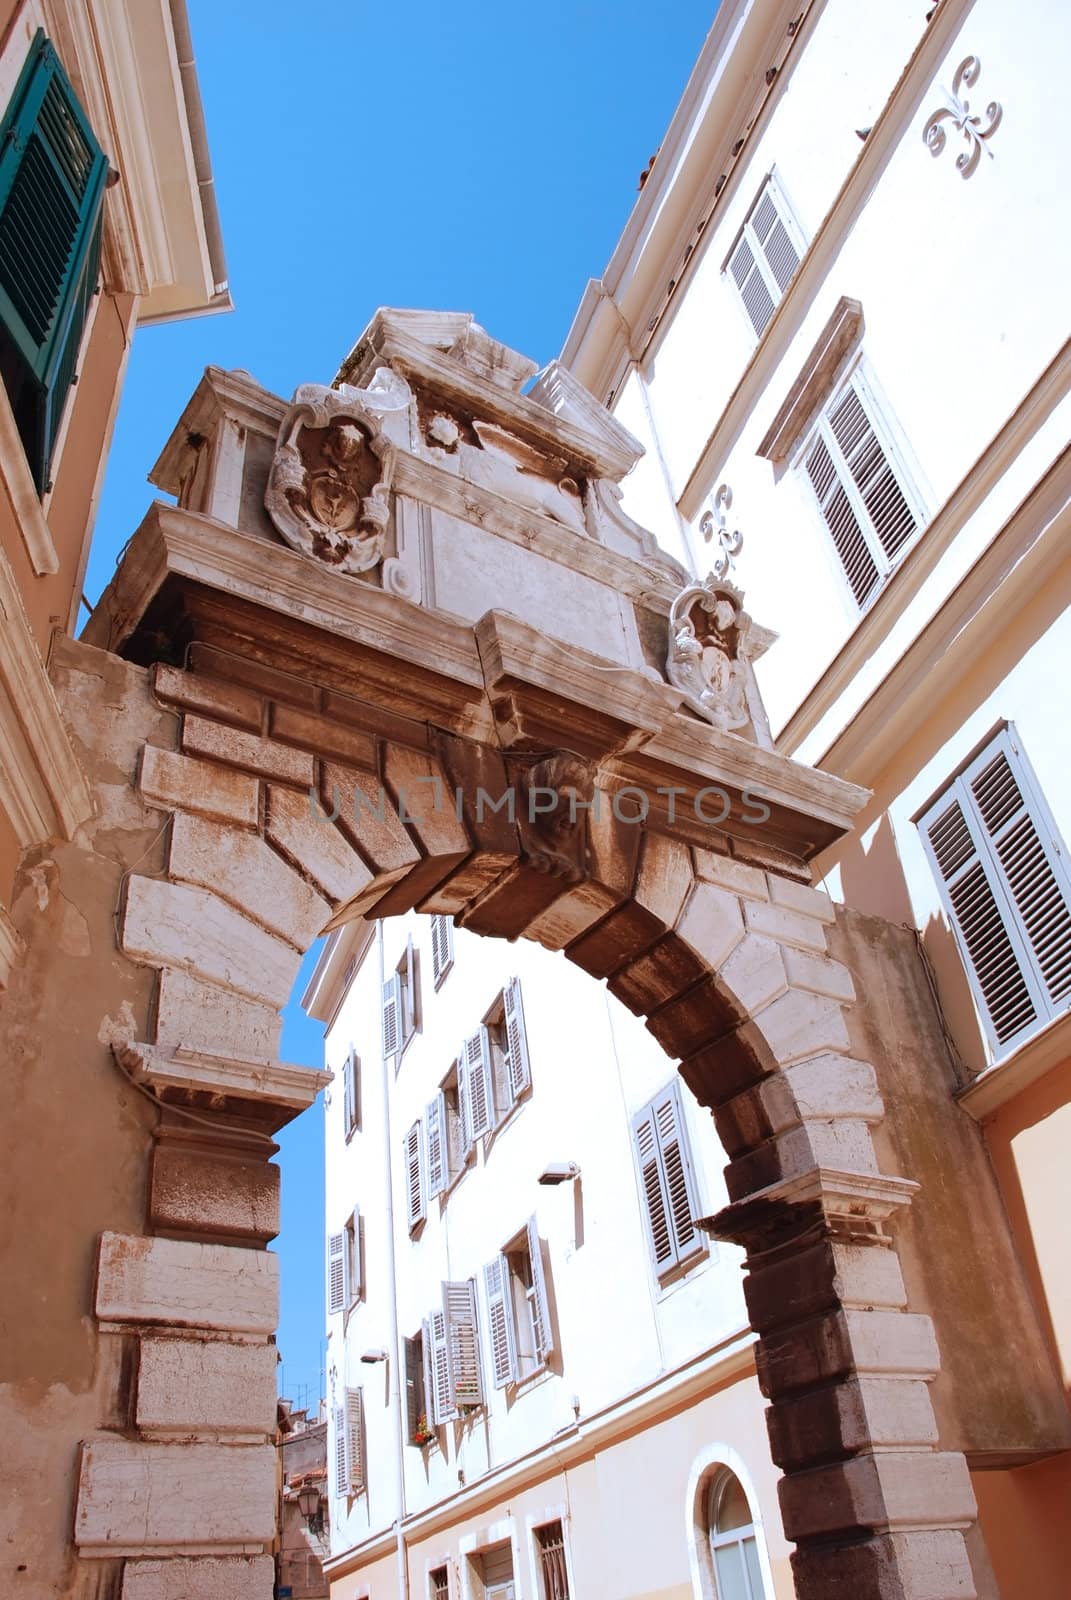 Arch Balbe at Rovinj city, Istria, Croatia